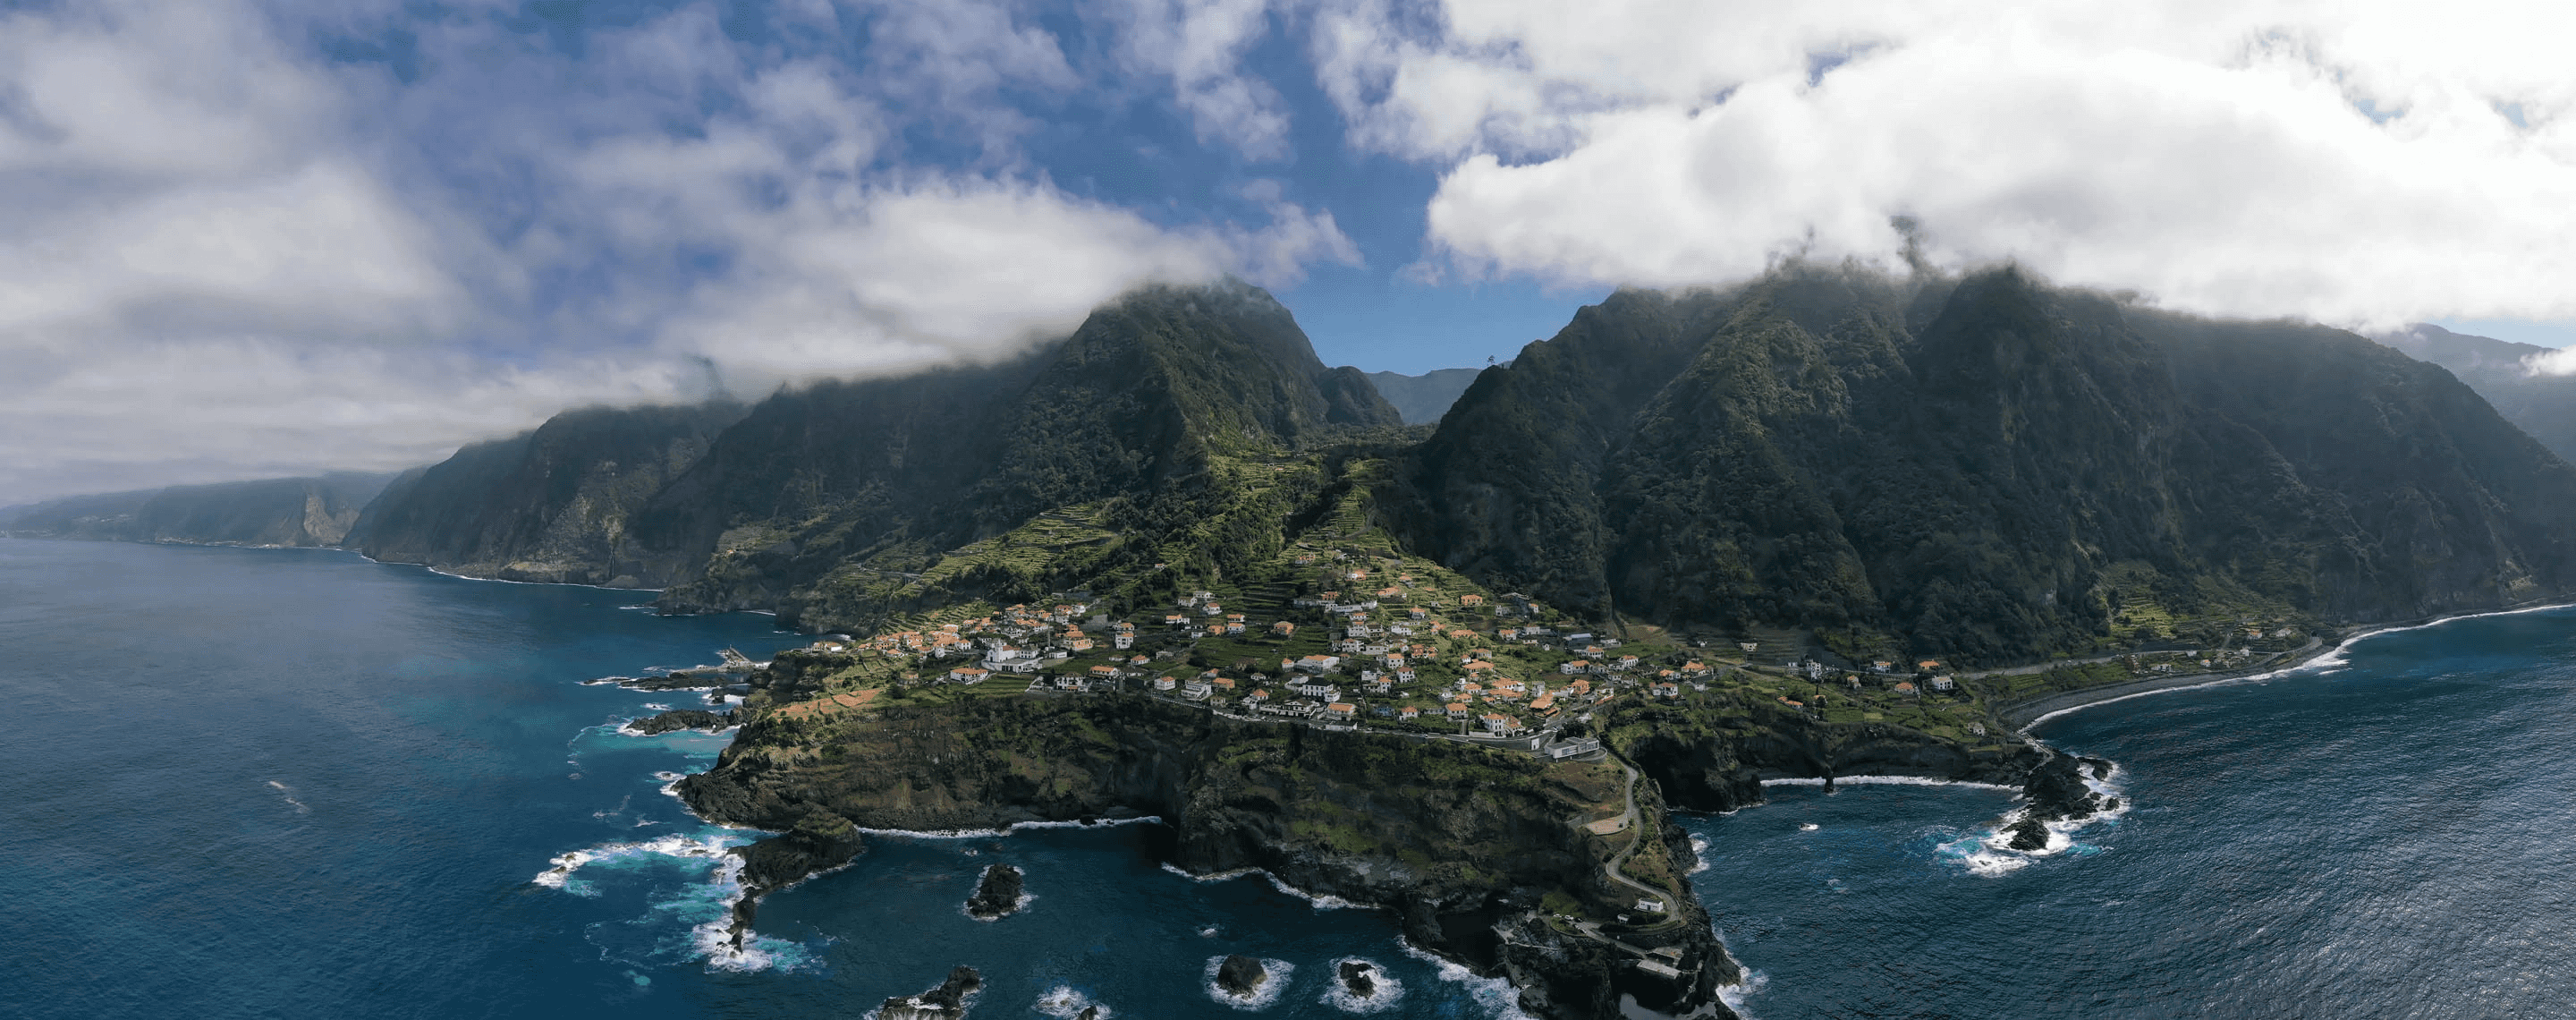 Panoramablick auf die portugiesische Insel Madeira